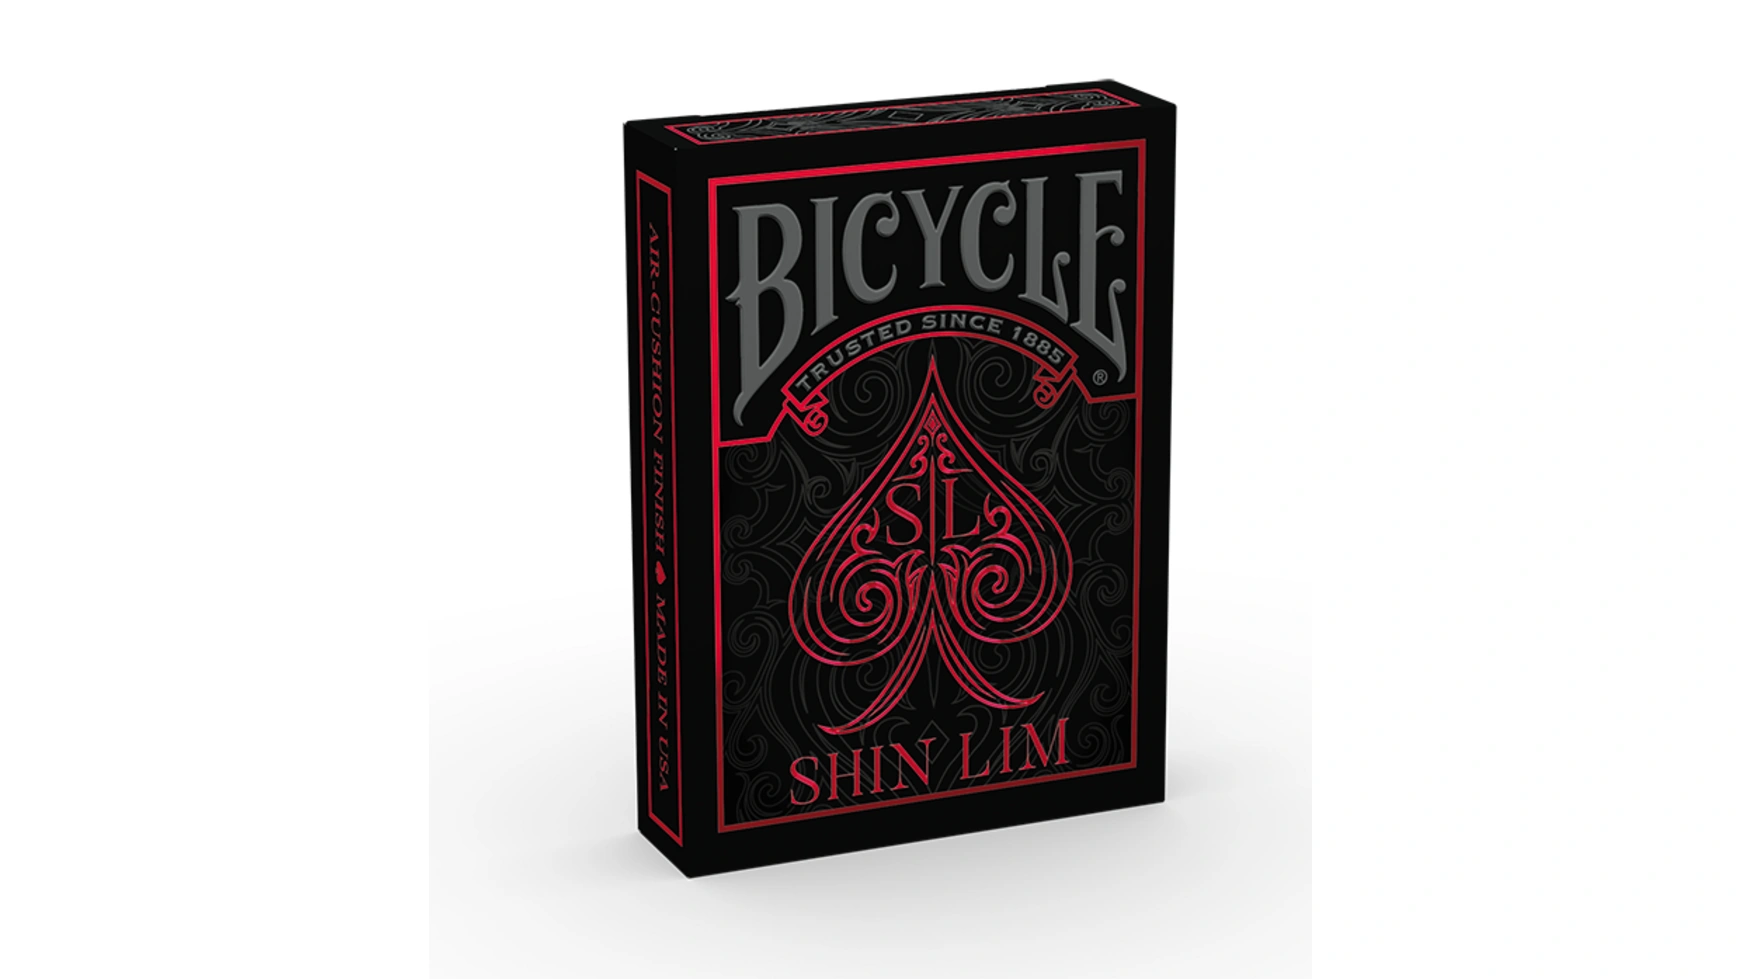 Bicycle Шин Лим магический трюк хуана тамариз магические трюки без реквизита класс 1 ла илвард